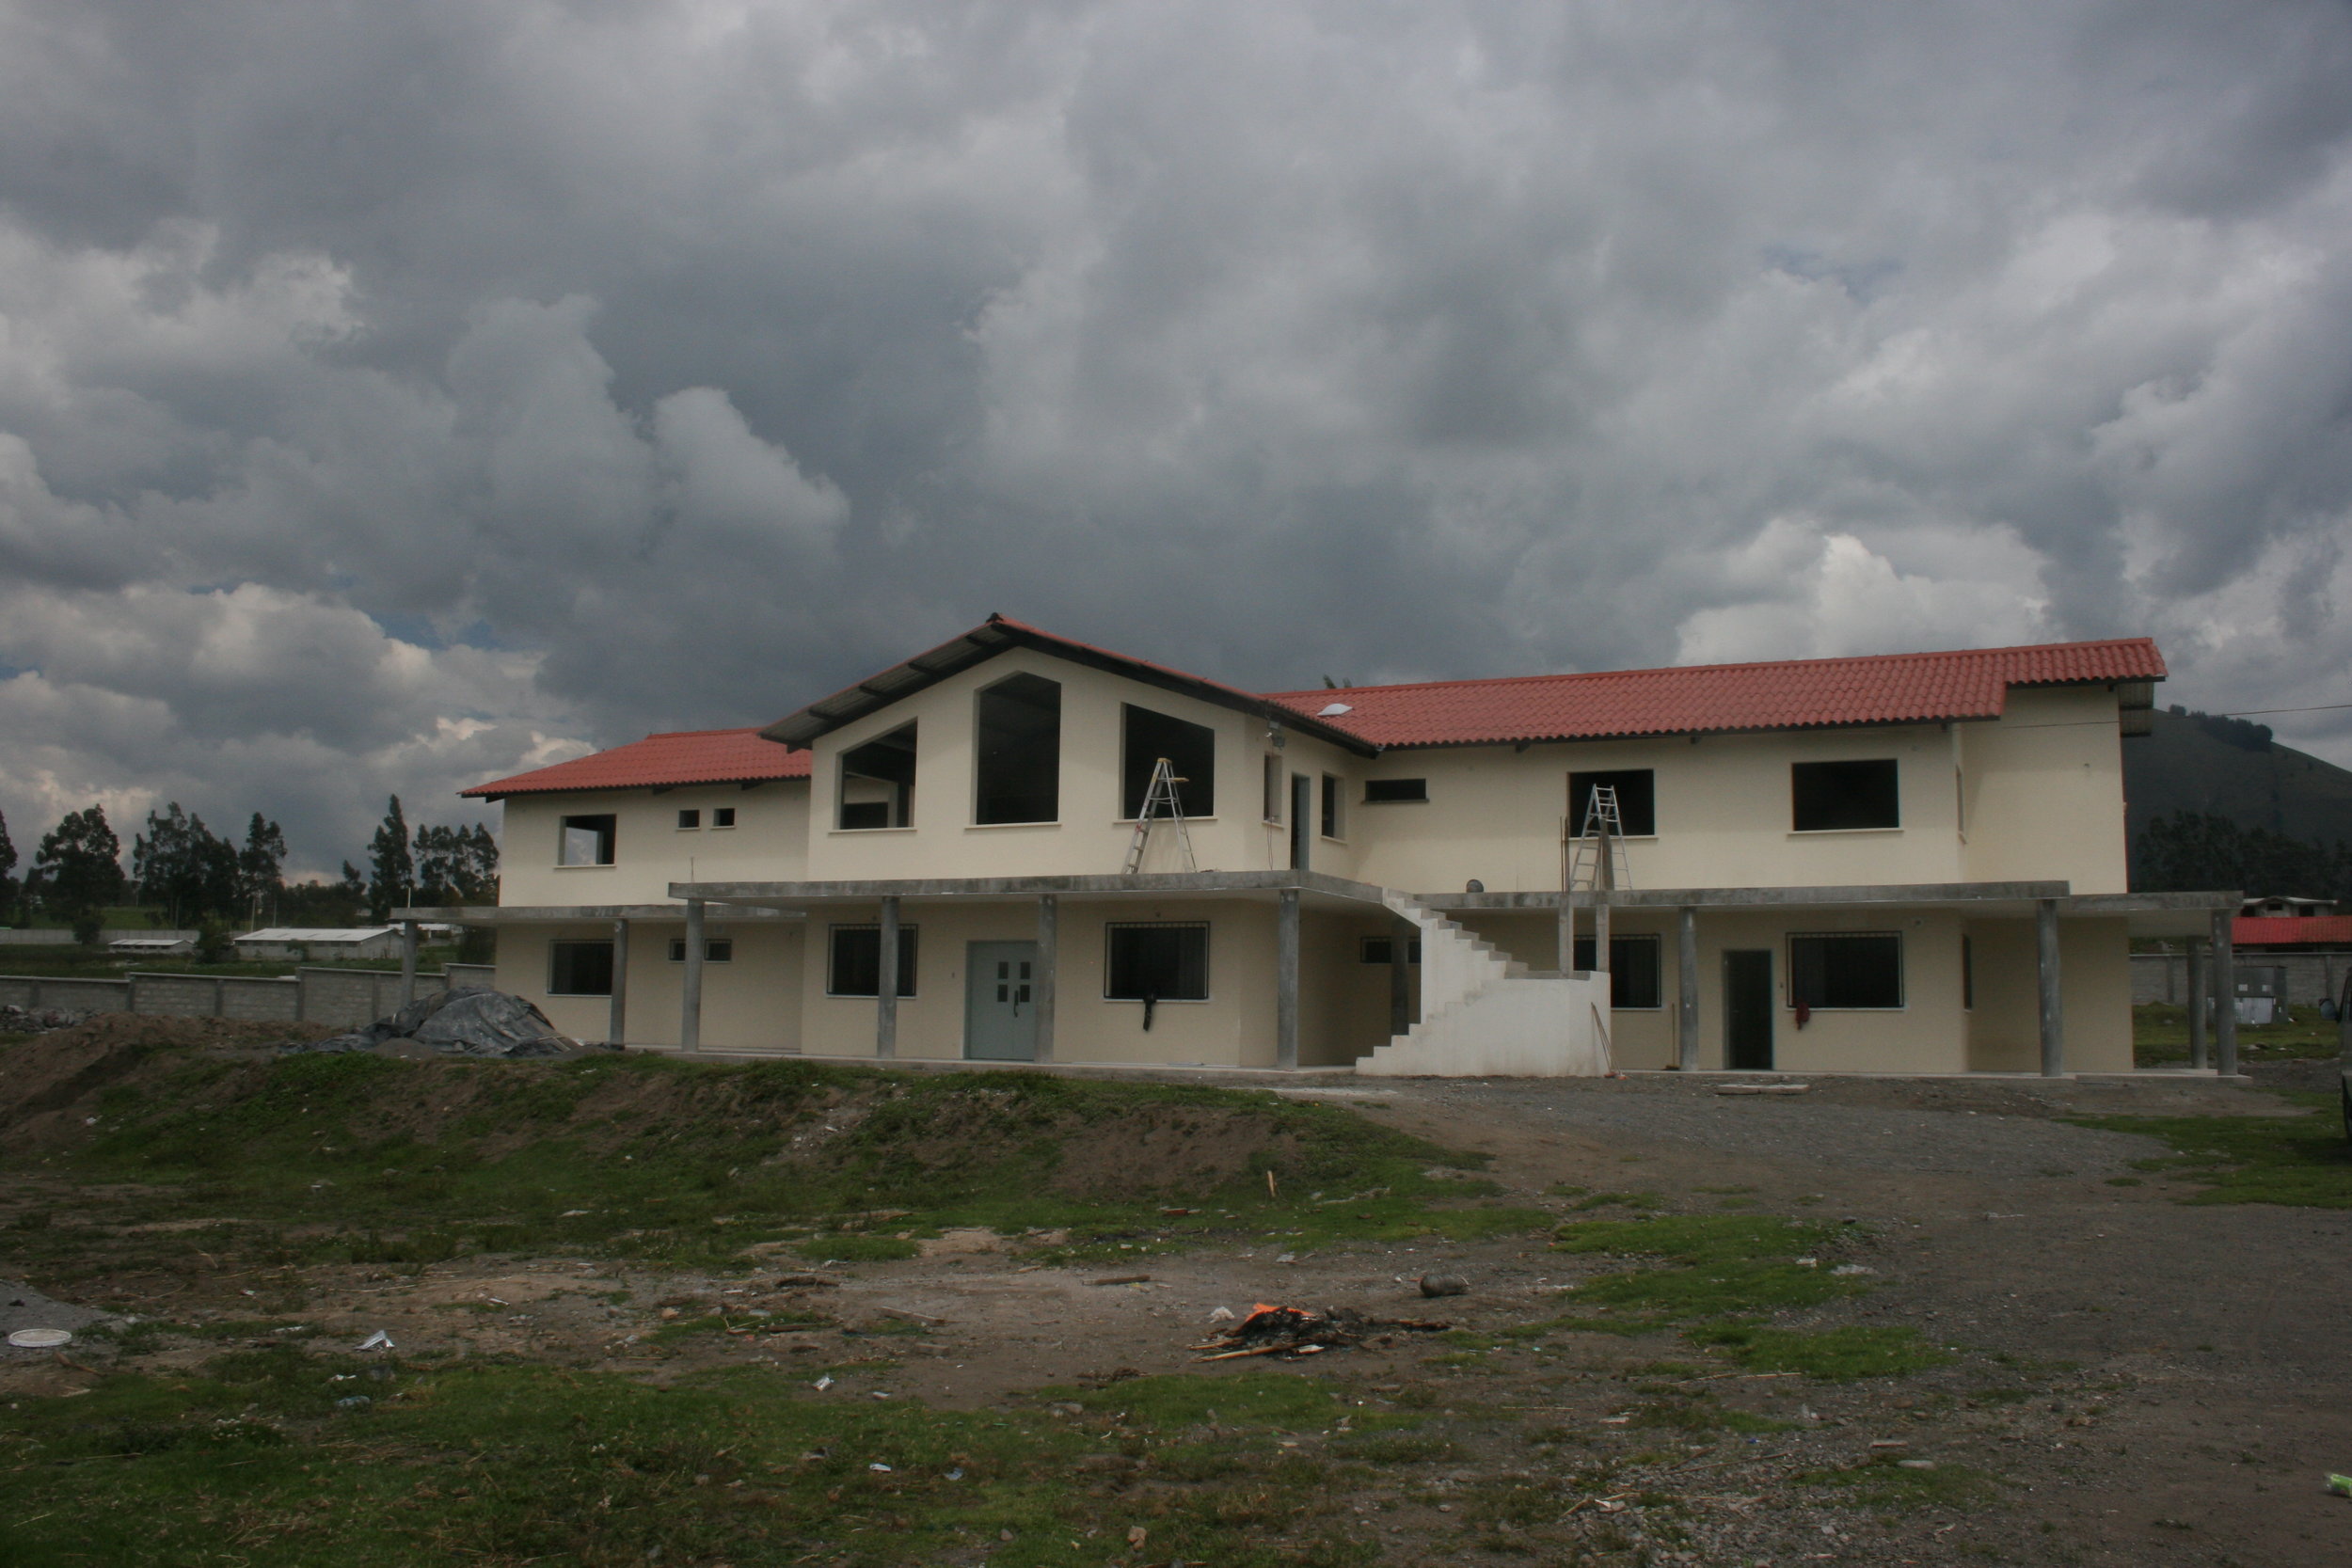 The 11,000 ft. home Dean designed, under construction in Latacunga, Ecuador